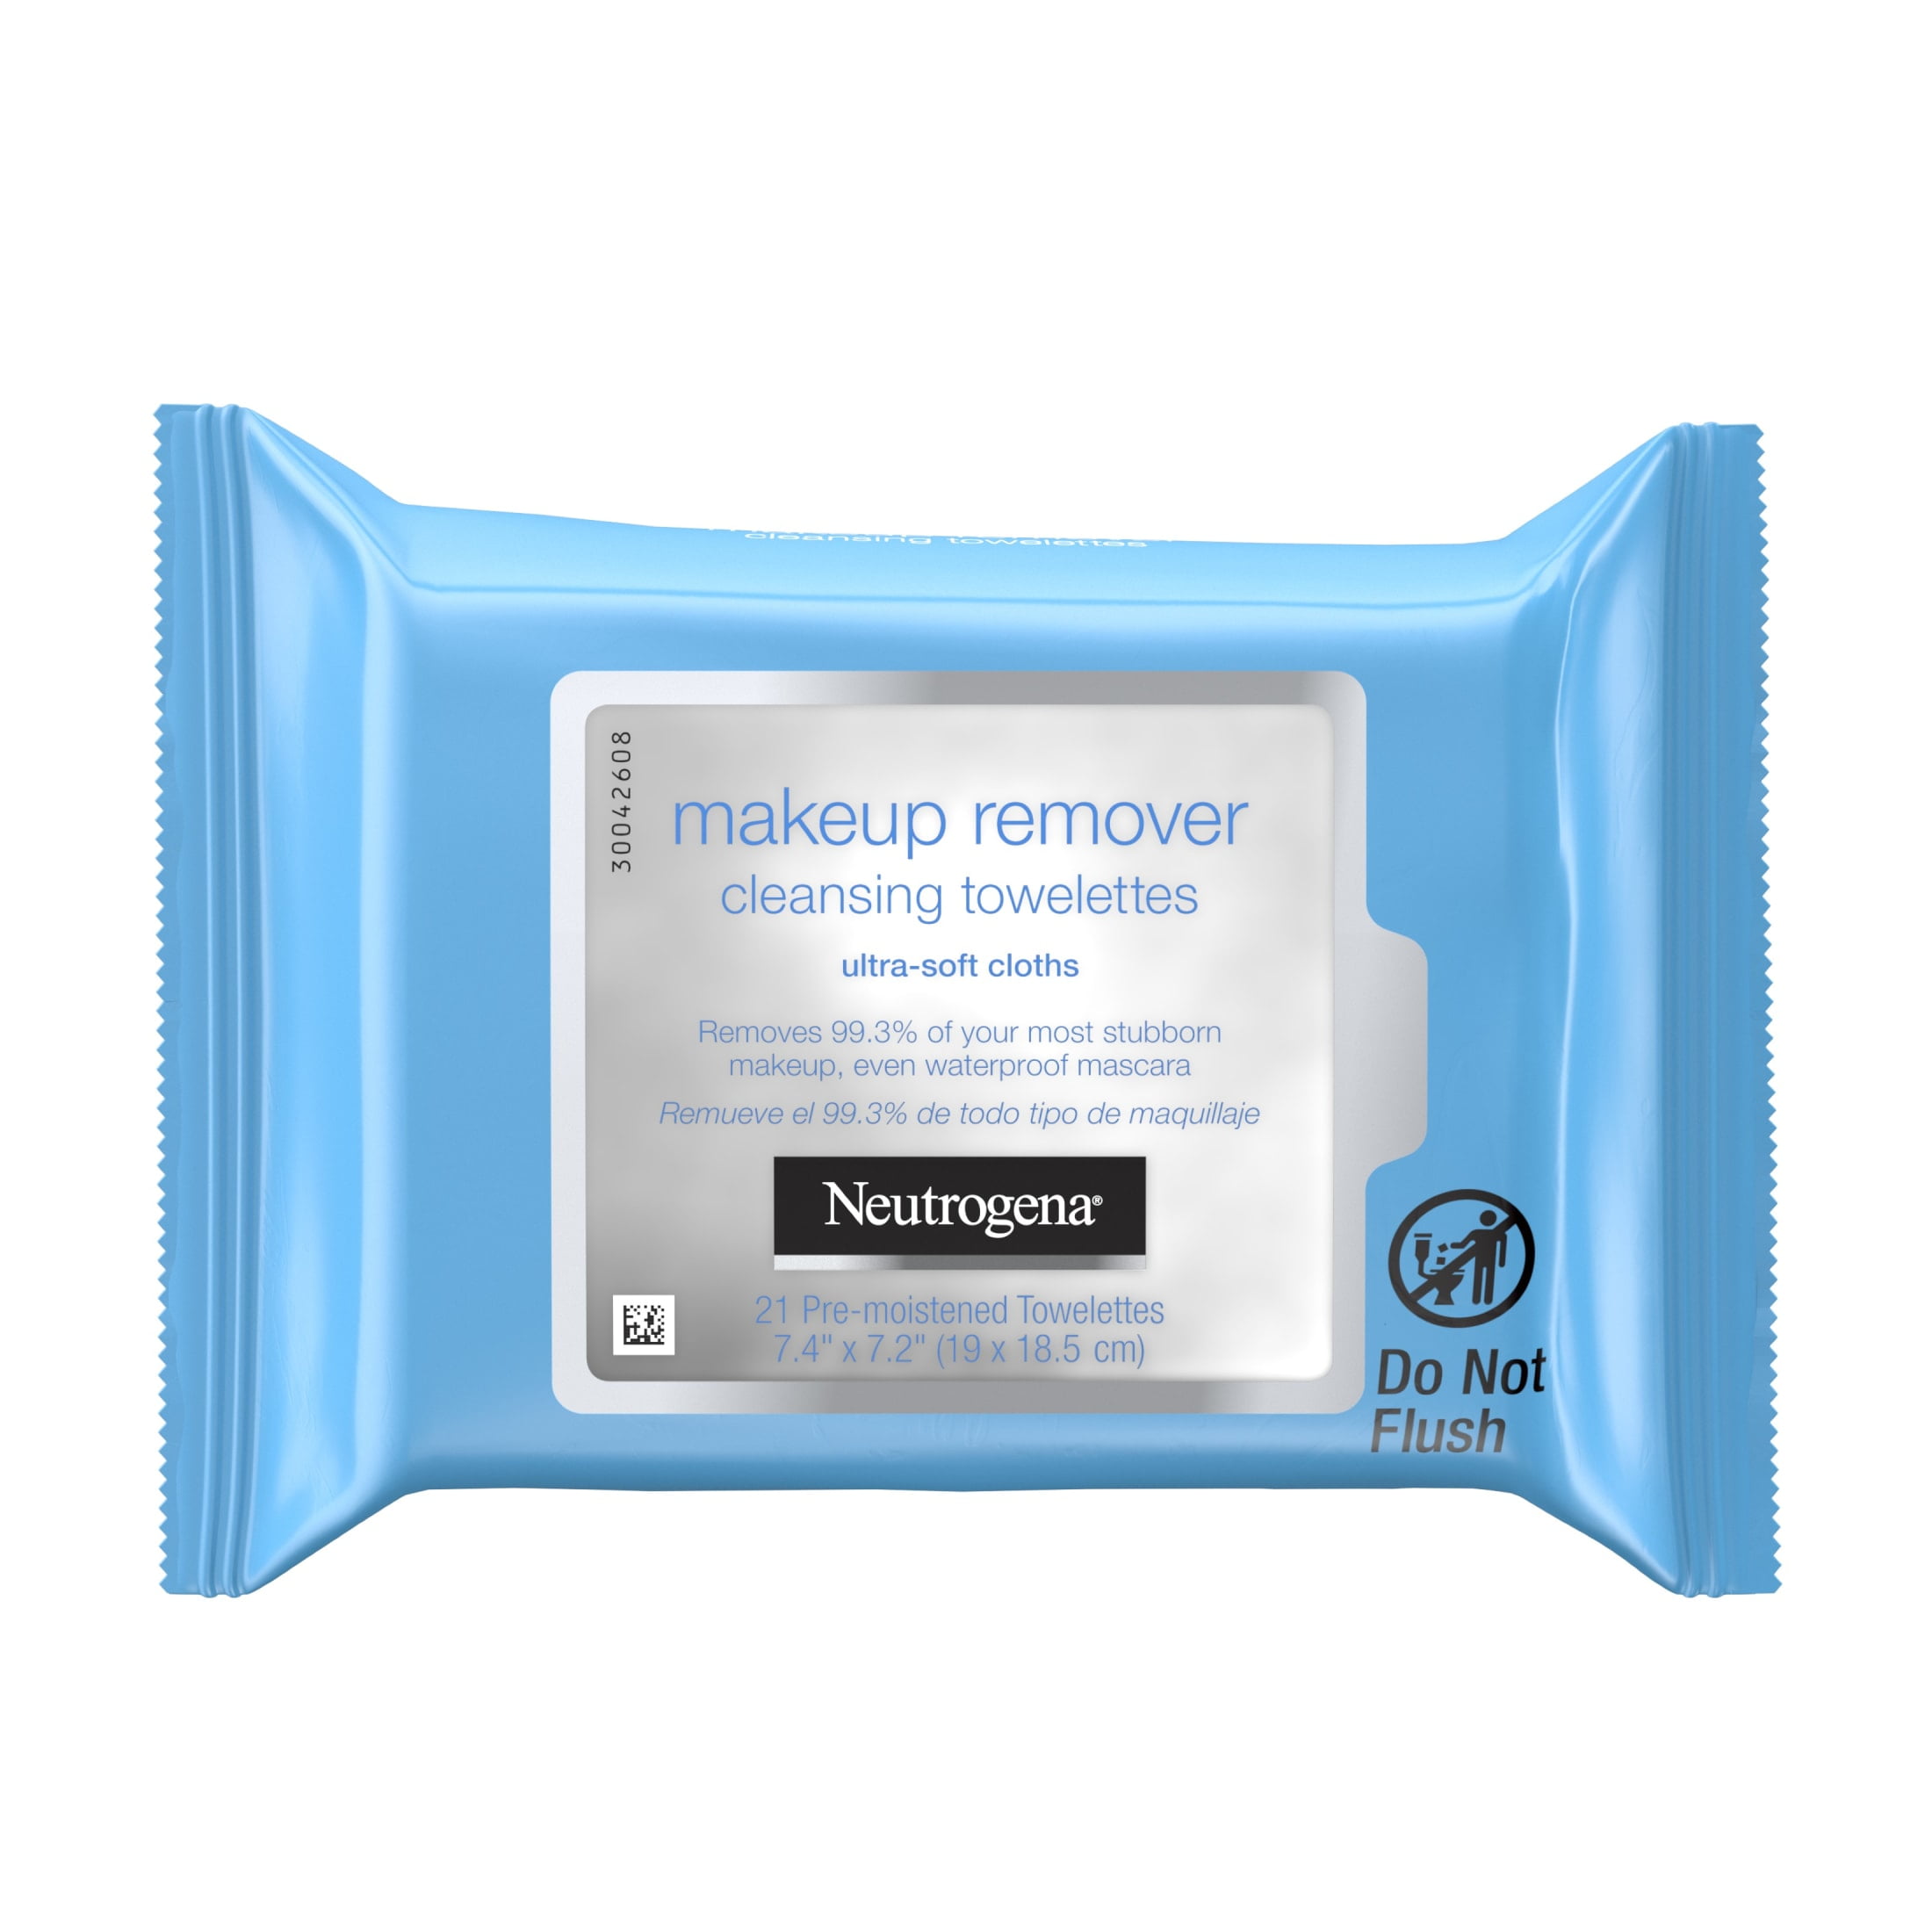 Uafhængig indbildskhed supplere Neutrogena Makeup Remover Wipes & Face Cleansing Towelettes, 21 ct -  Walmart.com